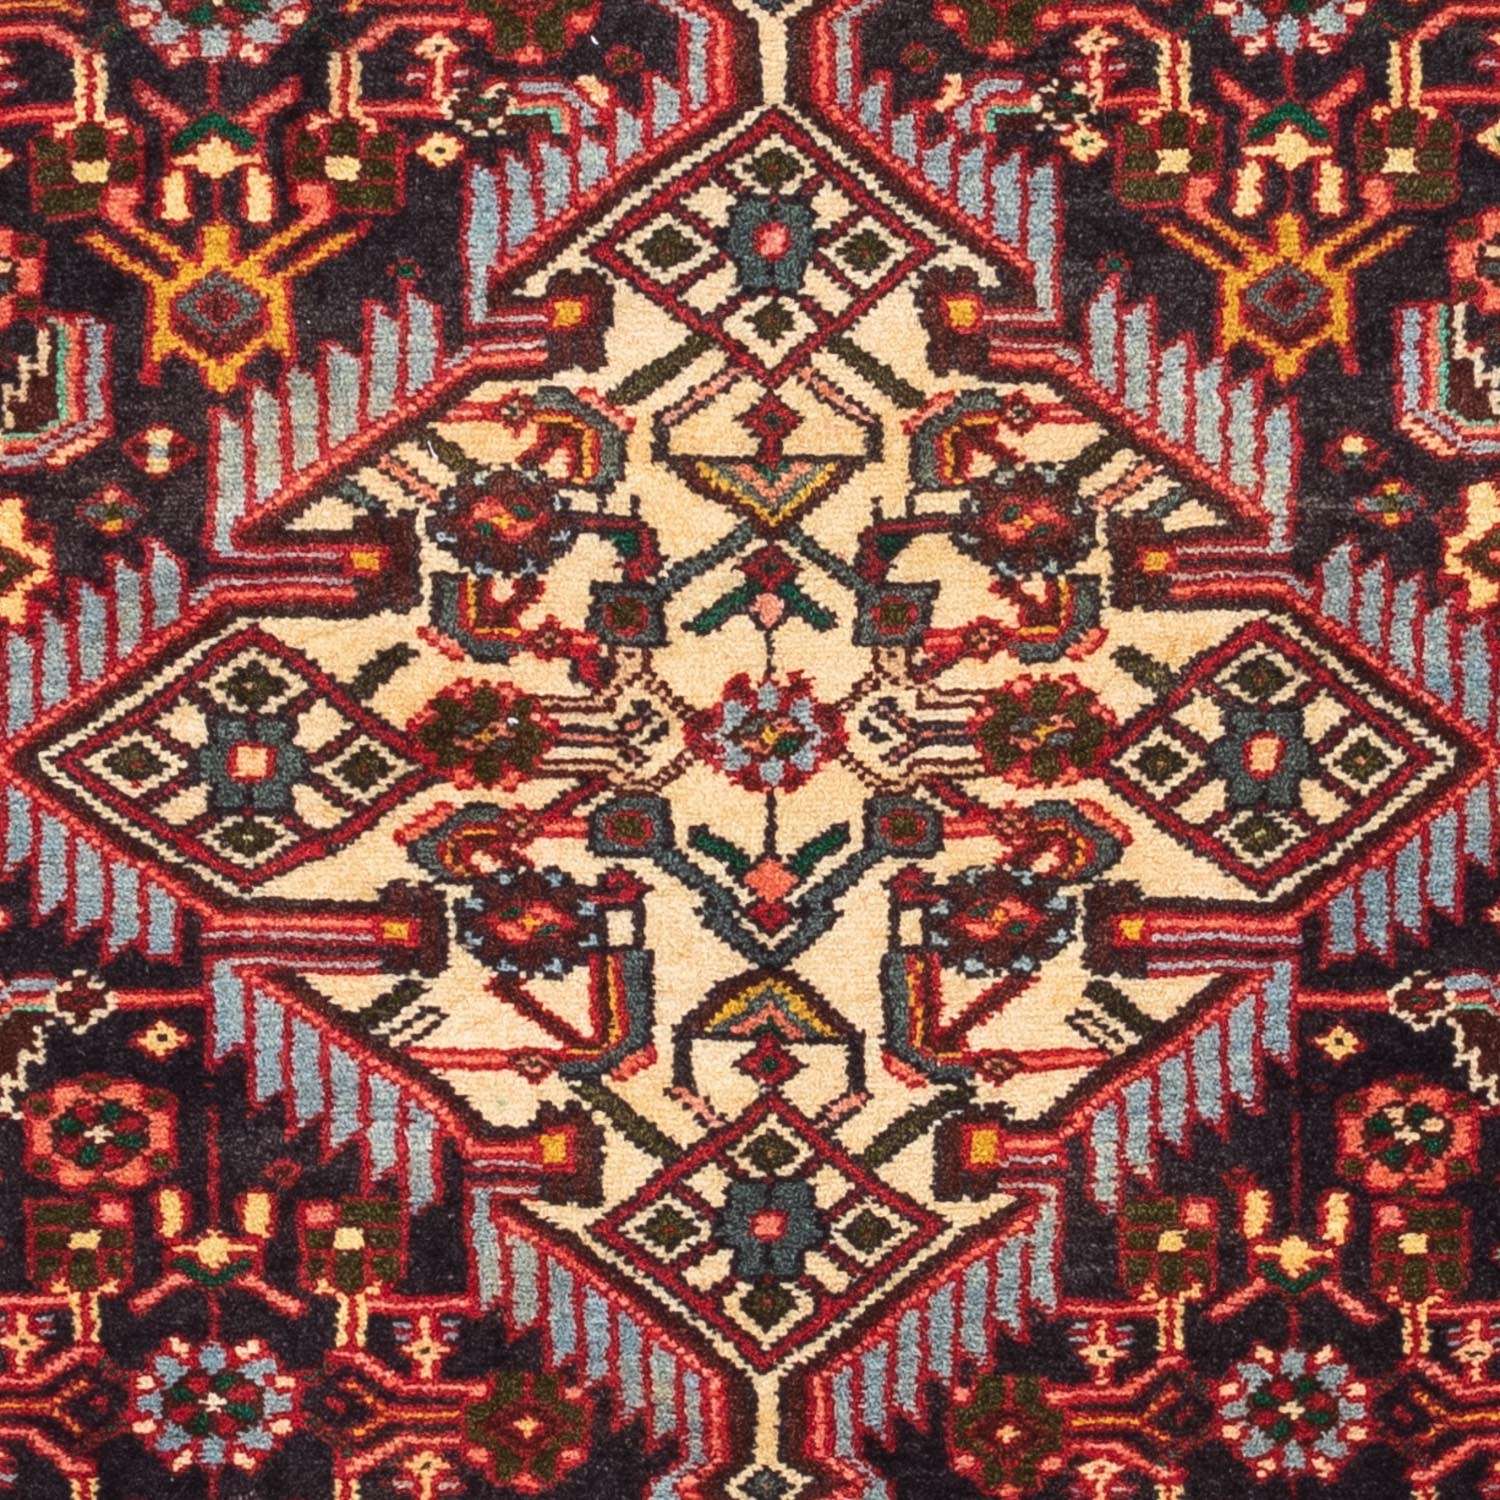 Persisk teppe - Nomadisk - 125 x 73 cm - lys rød